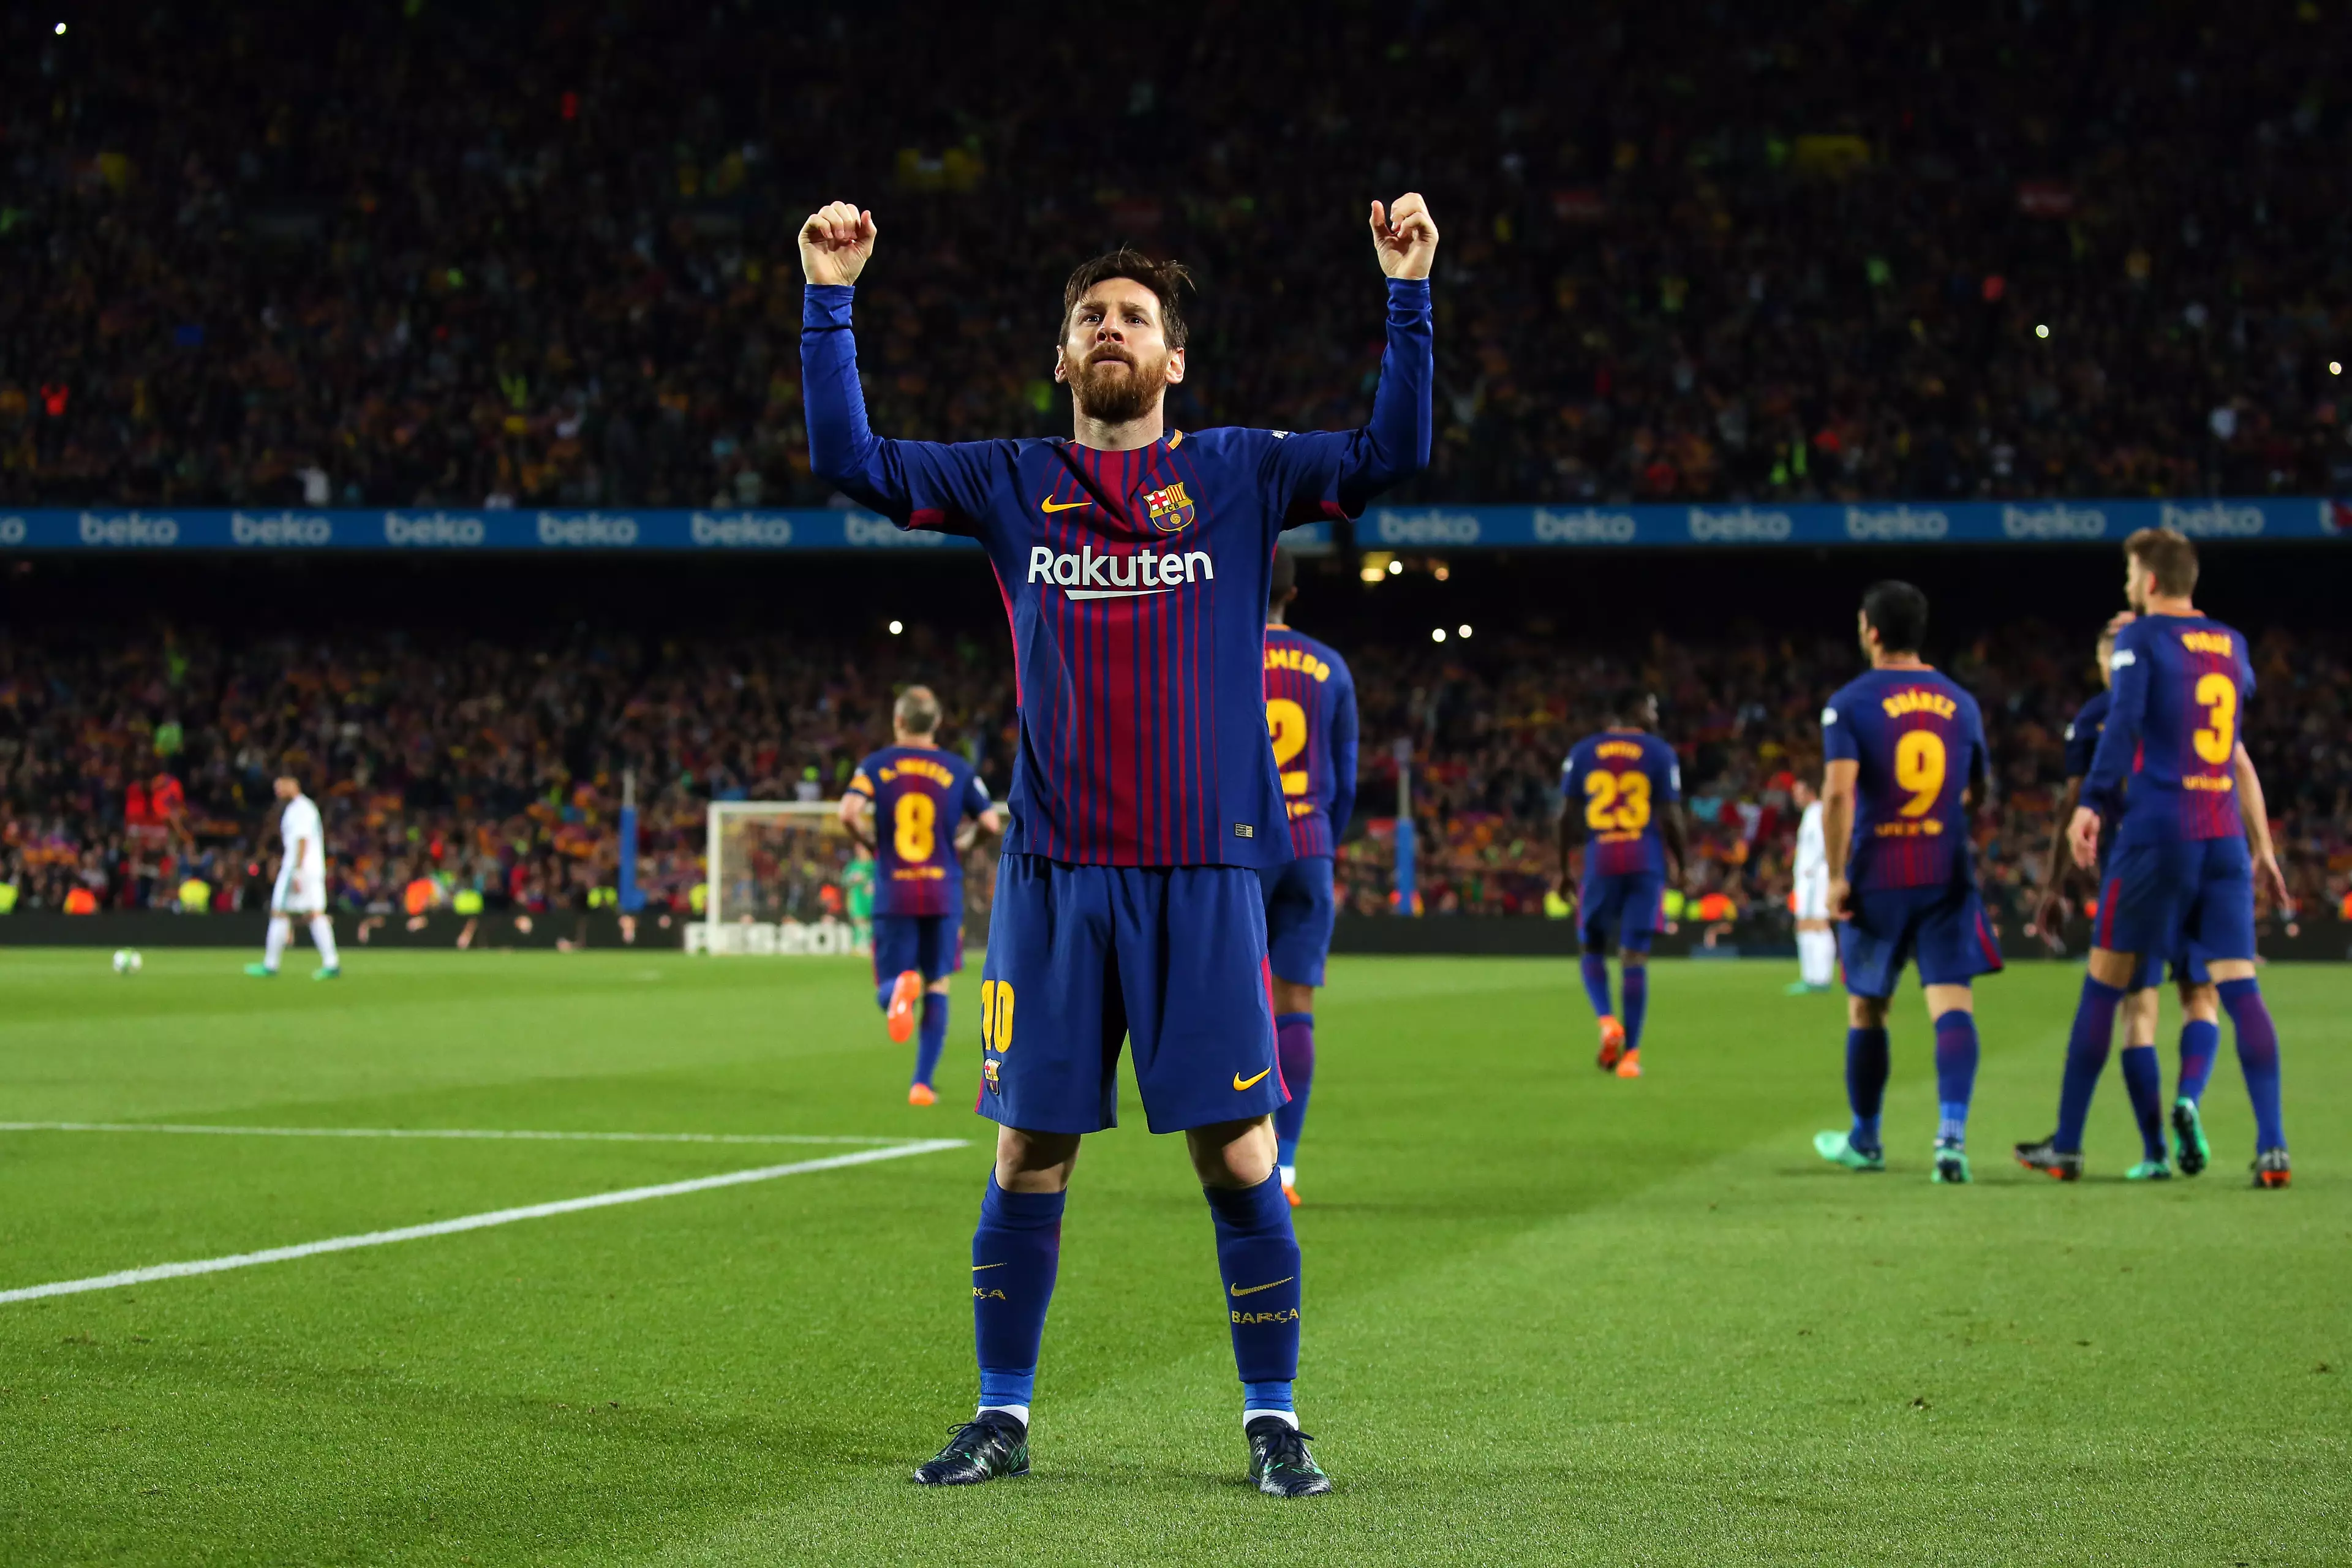 Messi celebrates scoring a goal. Image: PA